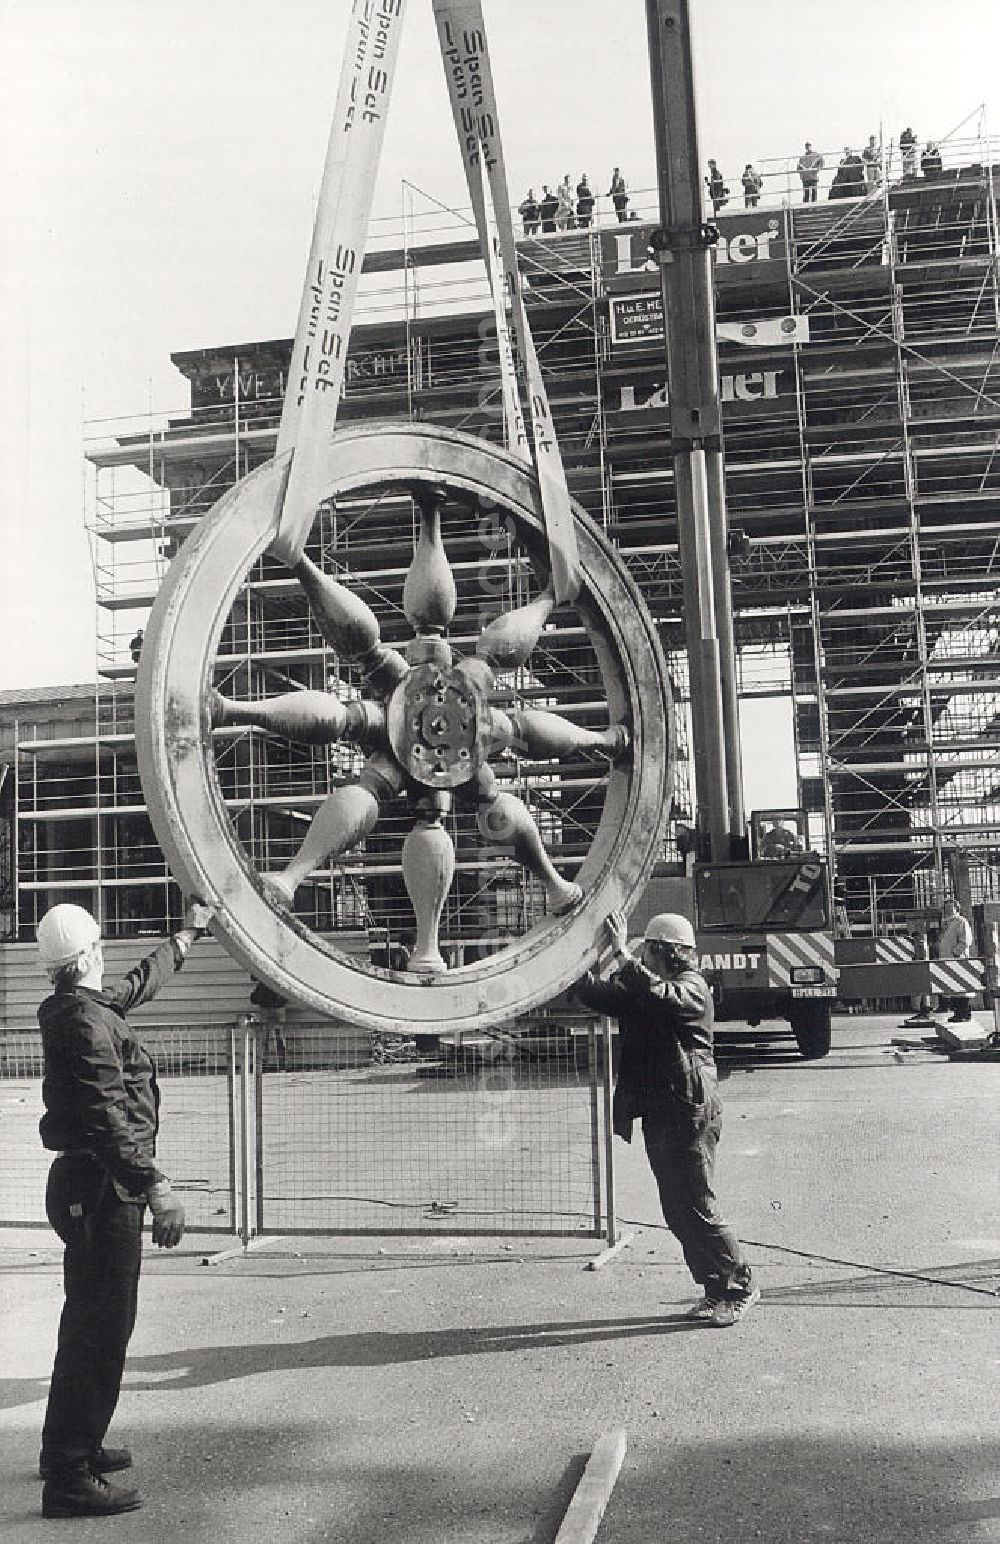 GDR image archive: Berlin - Demontage der Quadriga vom Brandenburger Tor für die Sanierung. Arbeiter vor, am Kran, hängendem Rad der Quadriga am Brandenburger Tor.